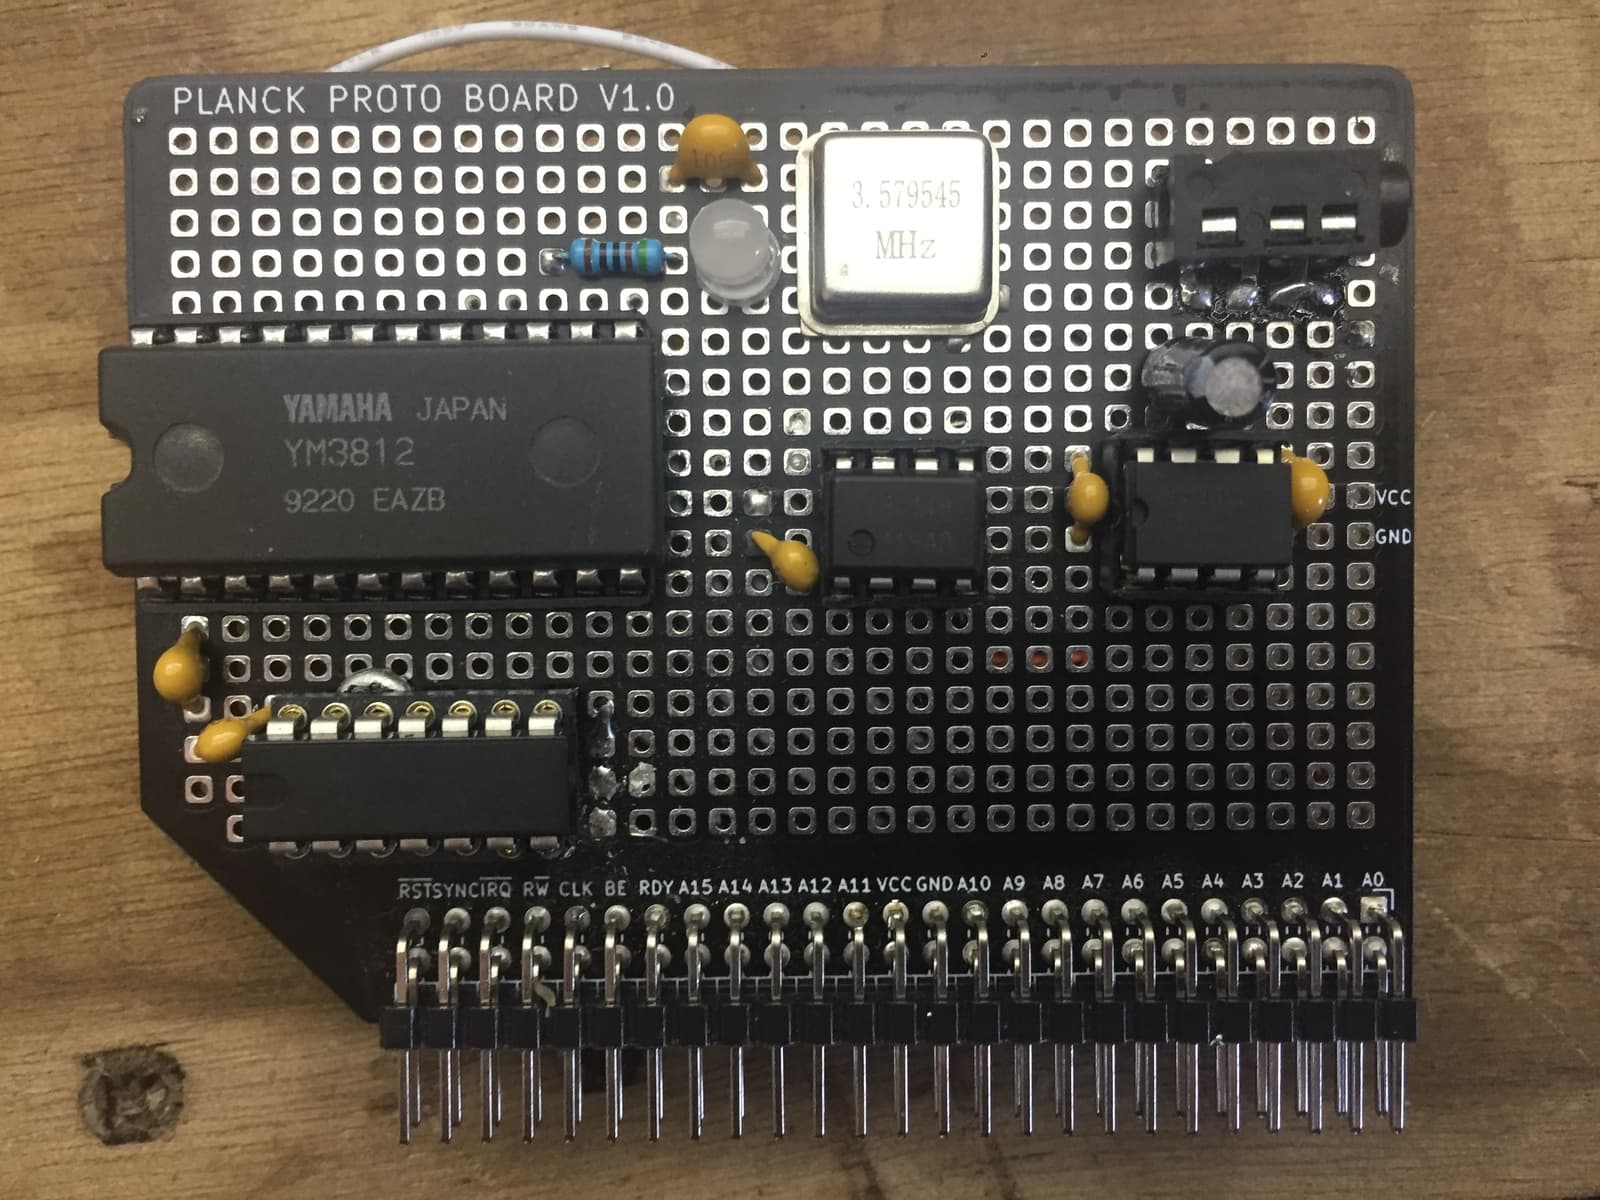 LCD board prototype